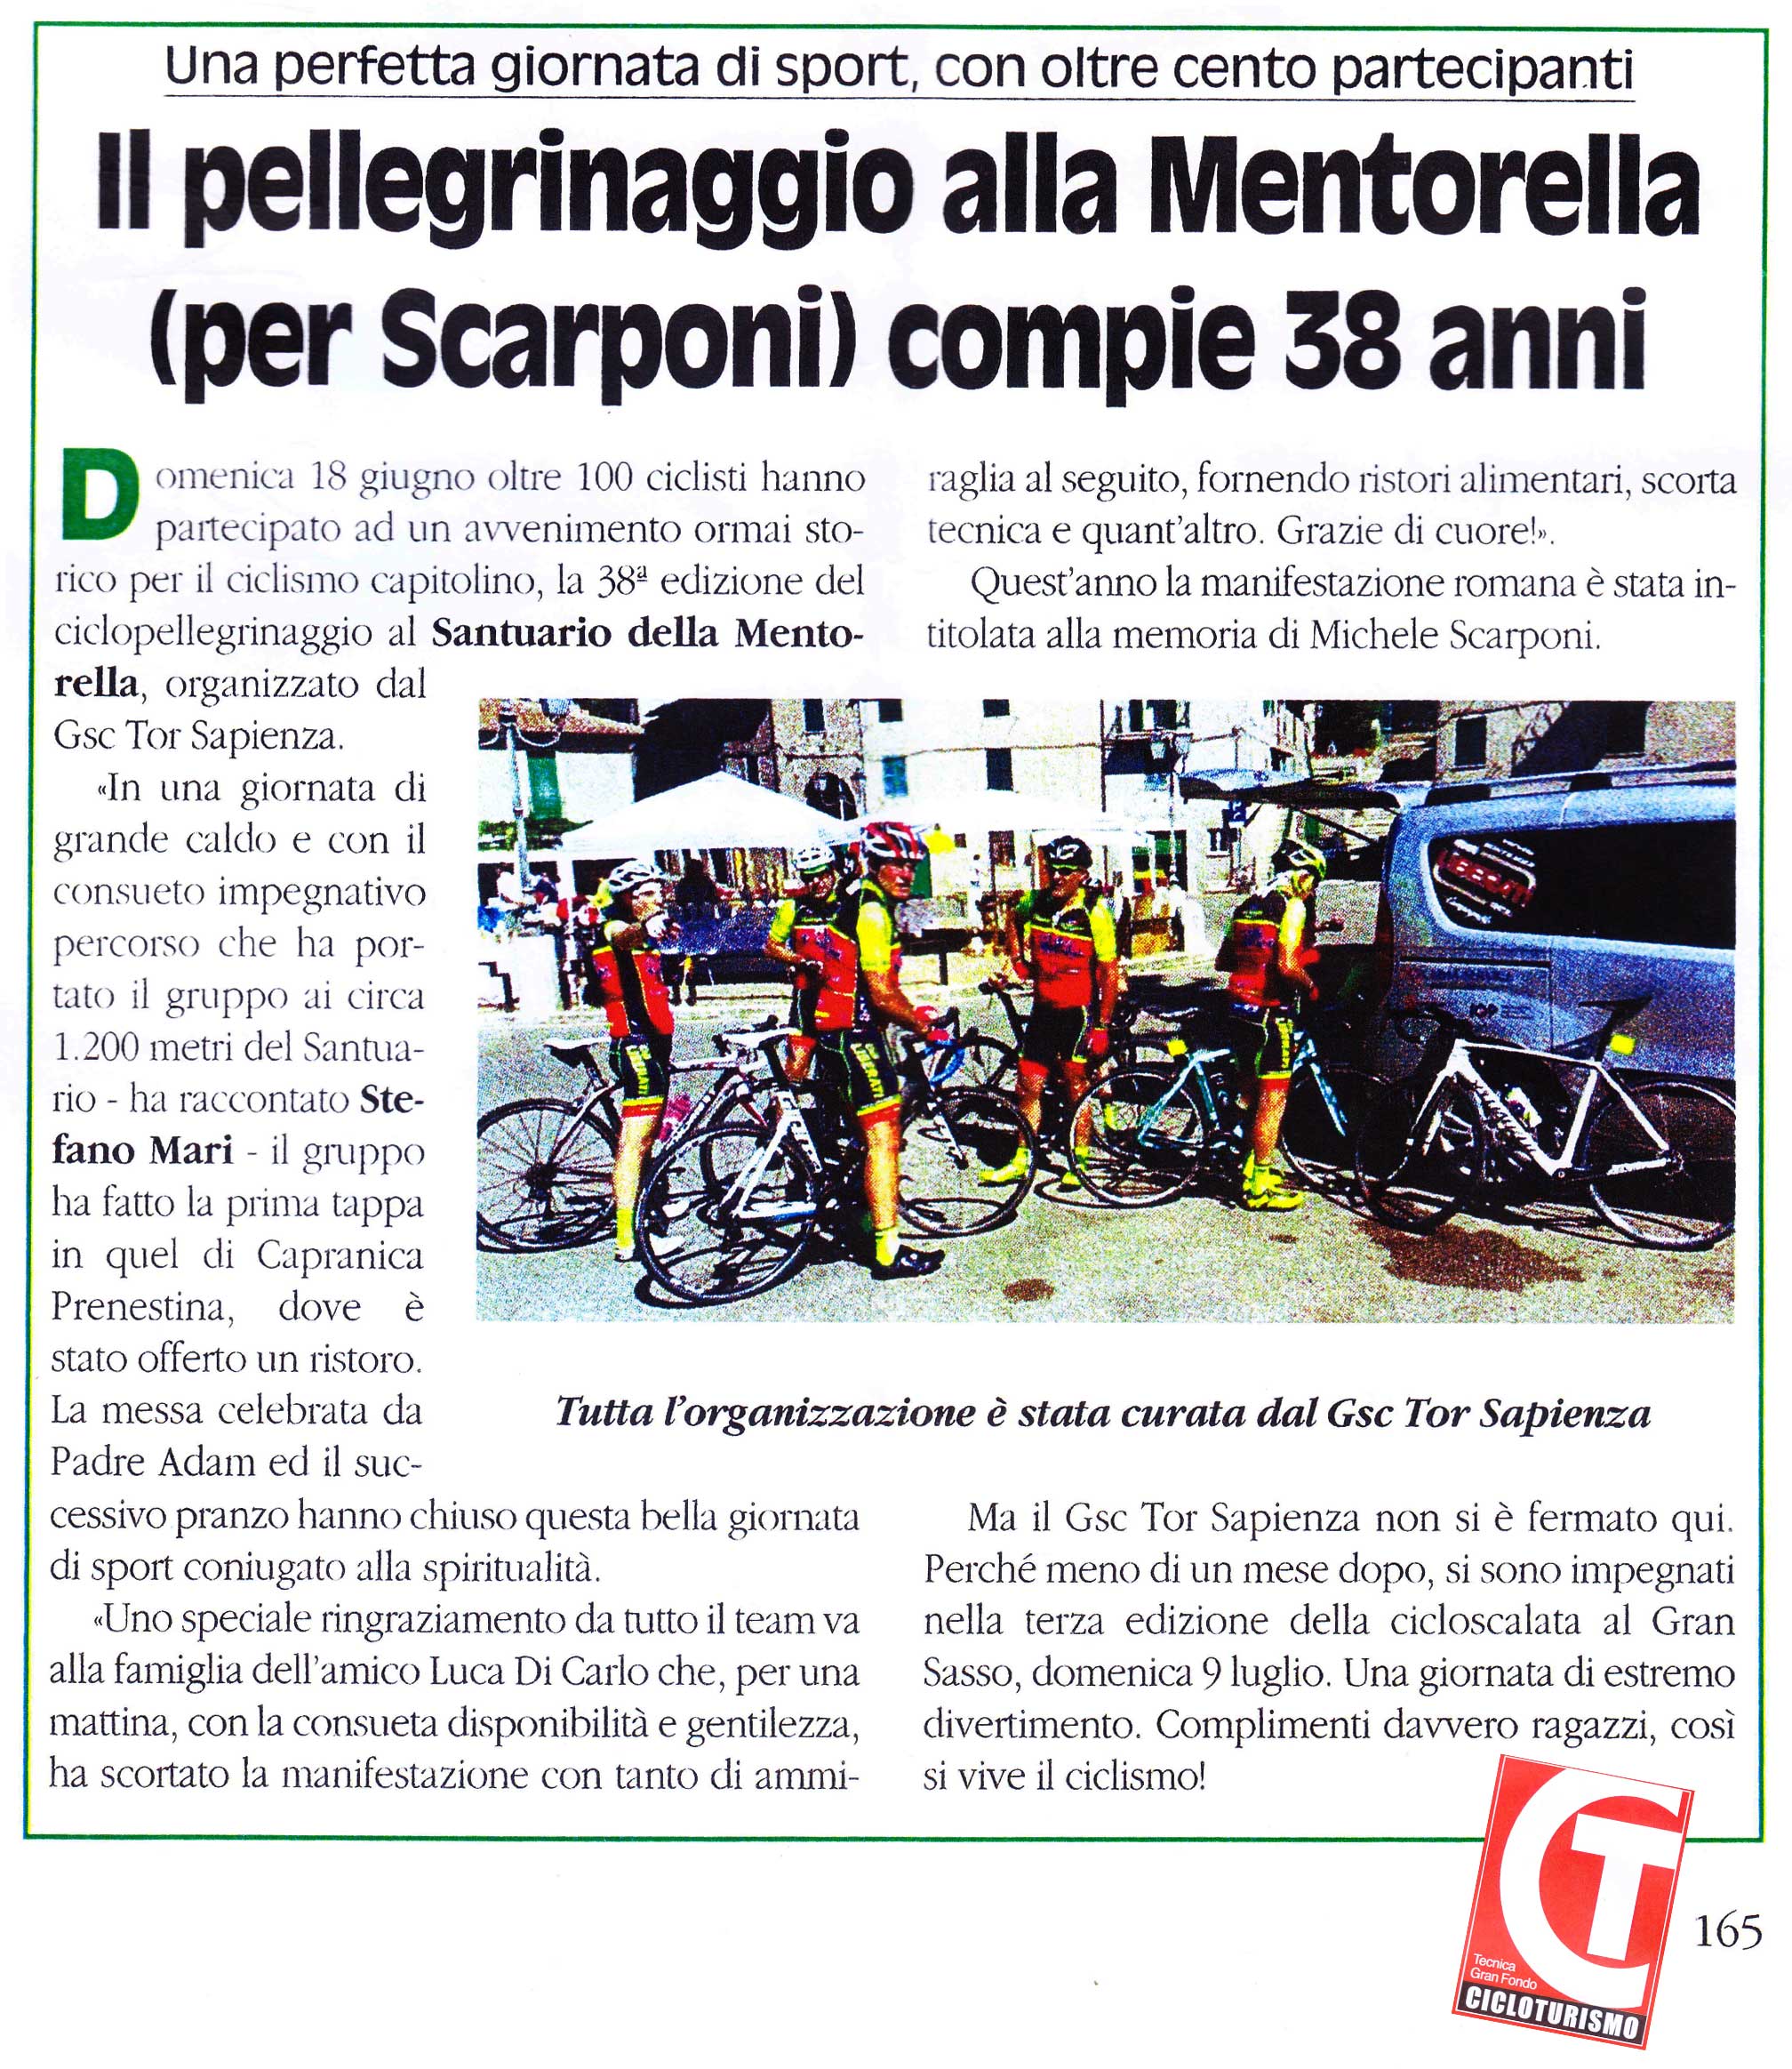 GSC Tor Sapienza, ClimaService impegnati nel pellegrinaggio alla Mentorella